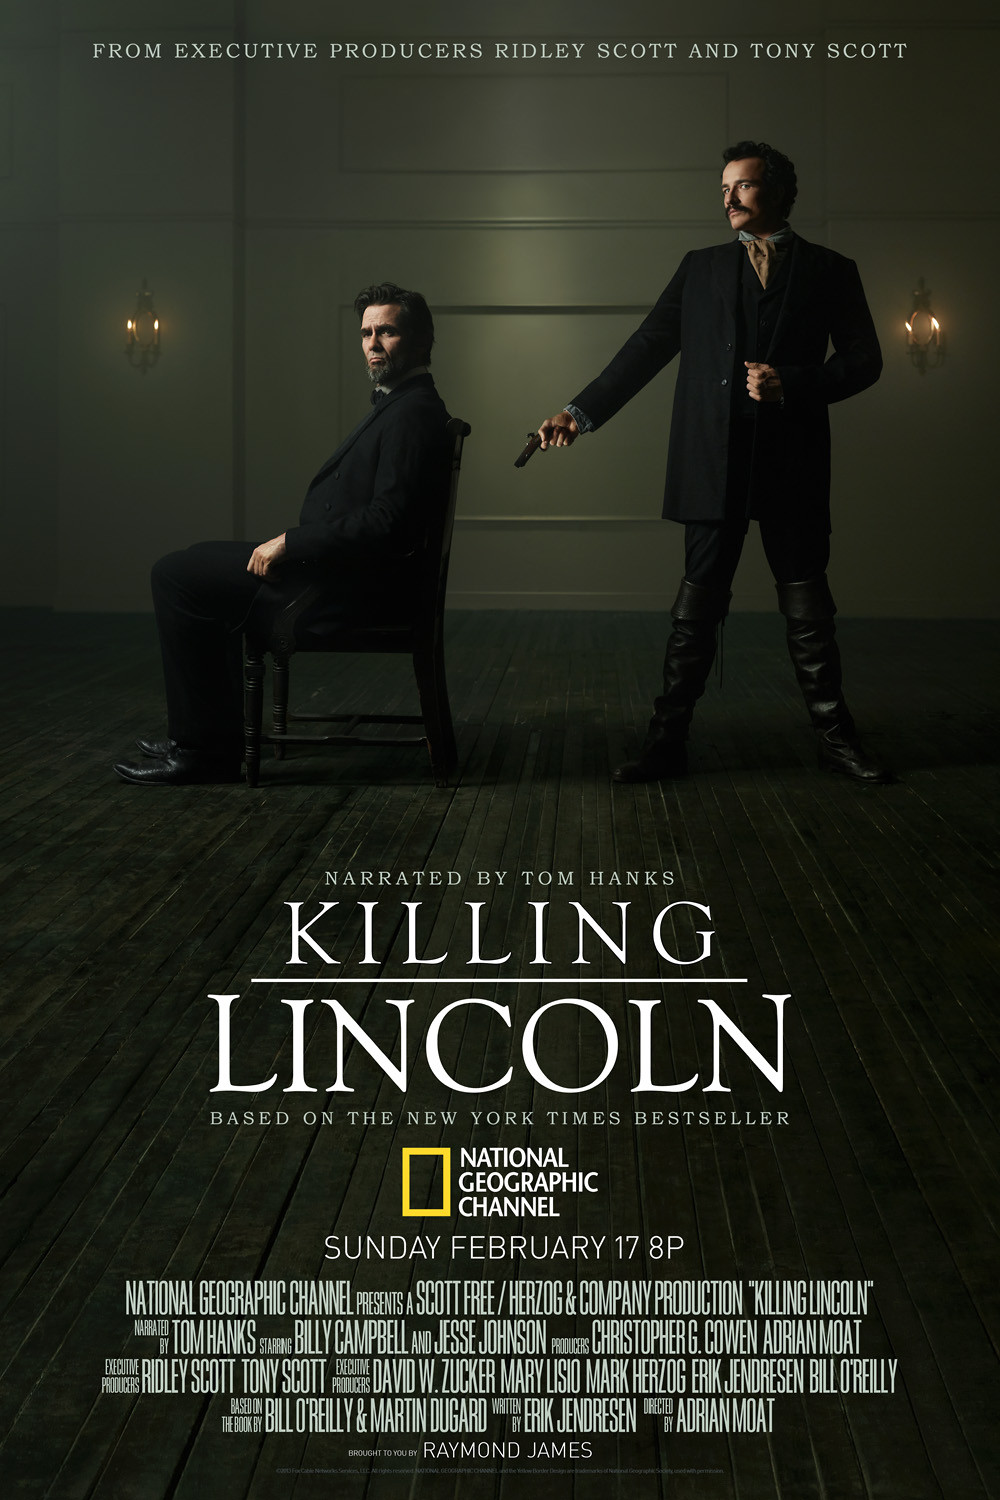 ดูหนังออนไลน์ฟรี ดูหนังออนไลน์ Killing Lincoln 2013 แผนฆ่า ลินคอล์น 037hdmovie